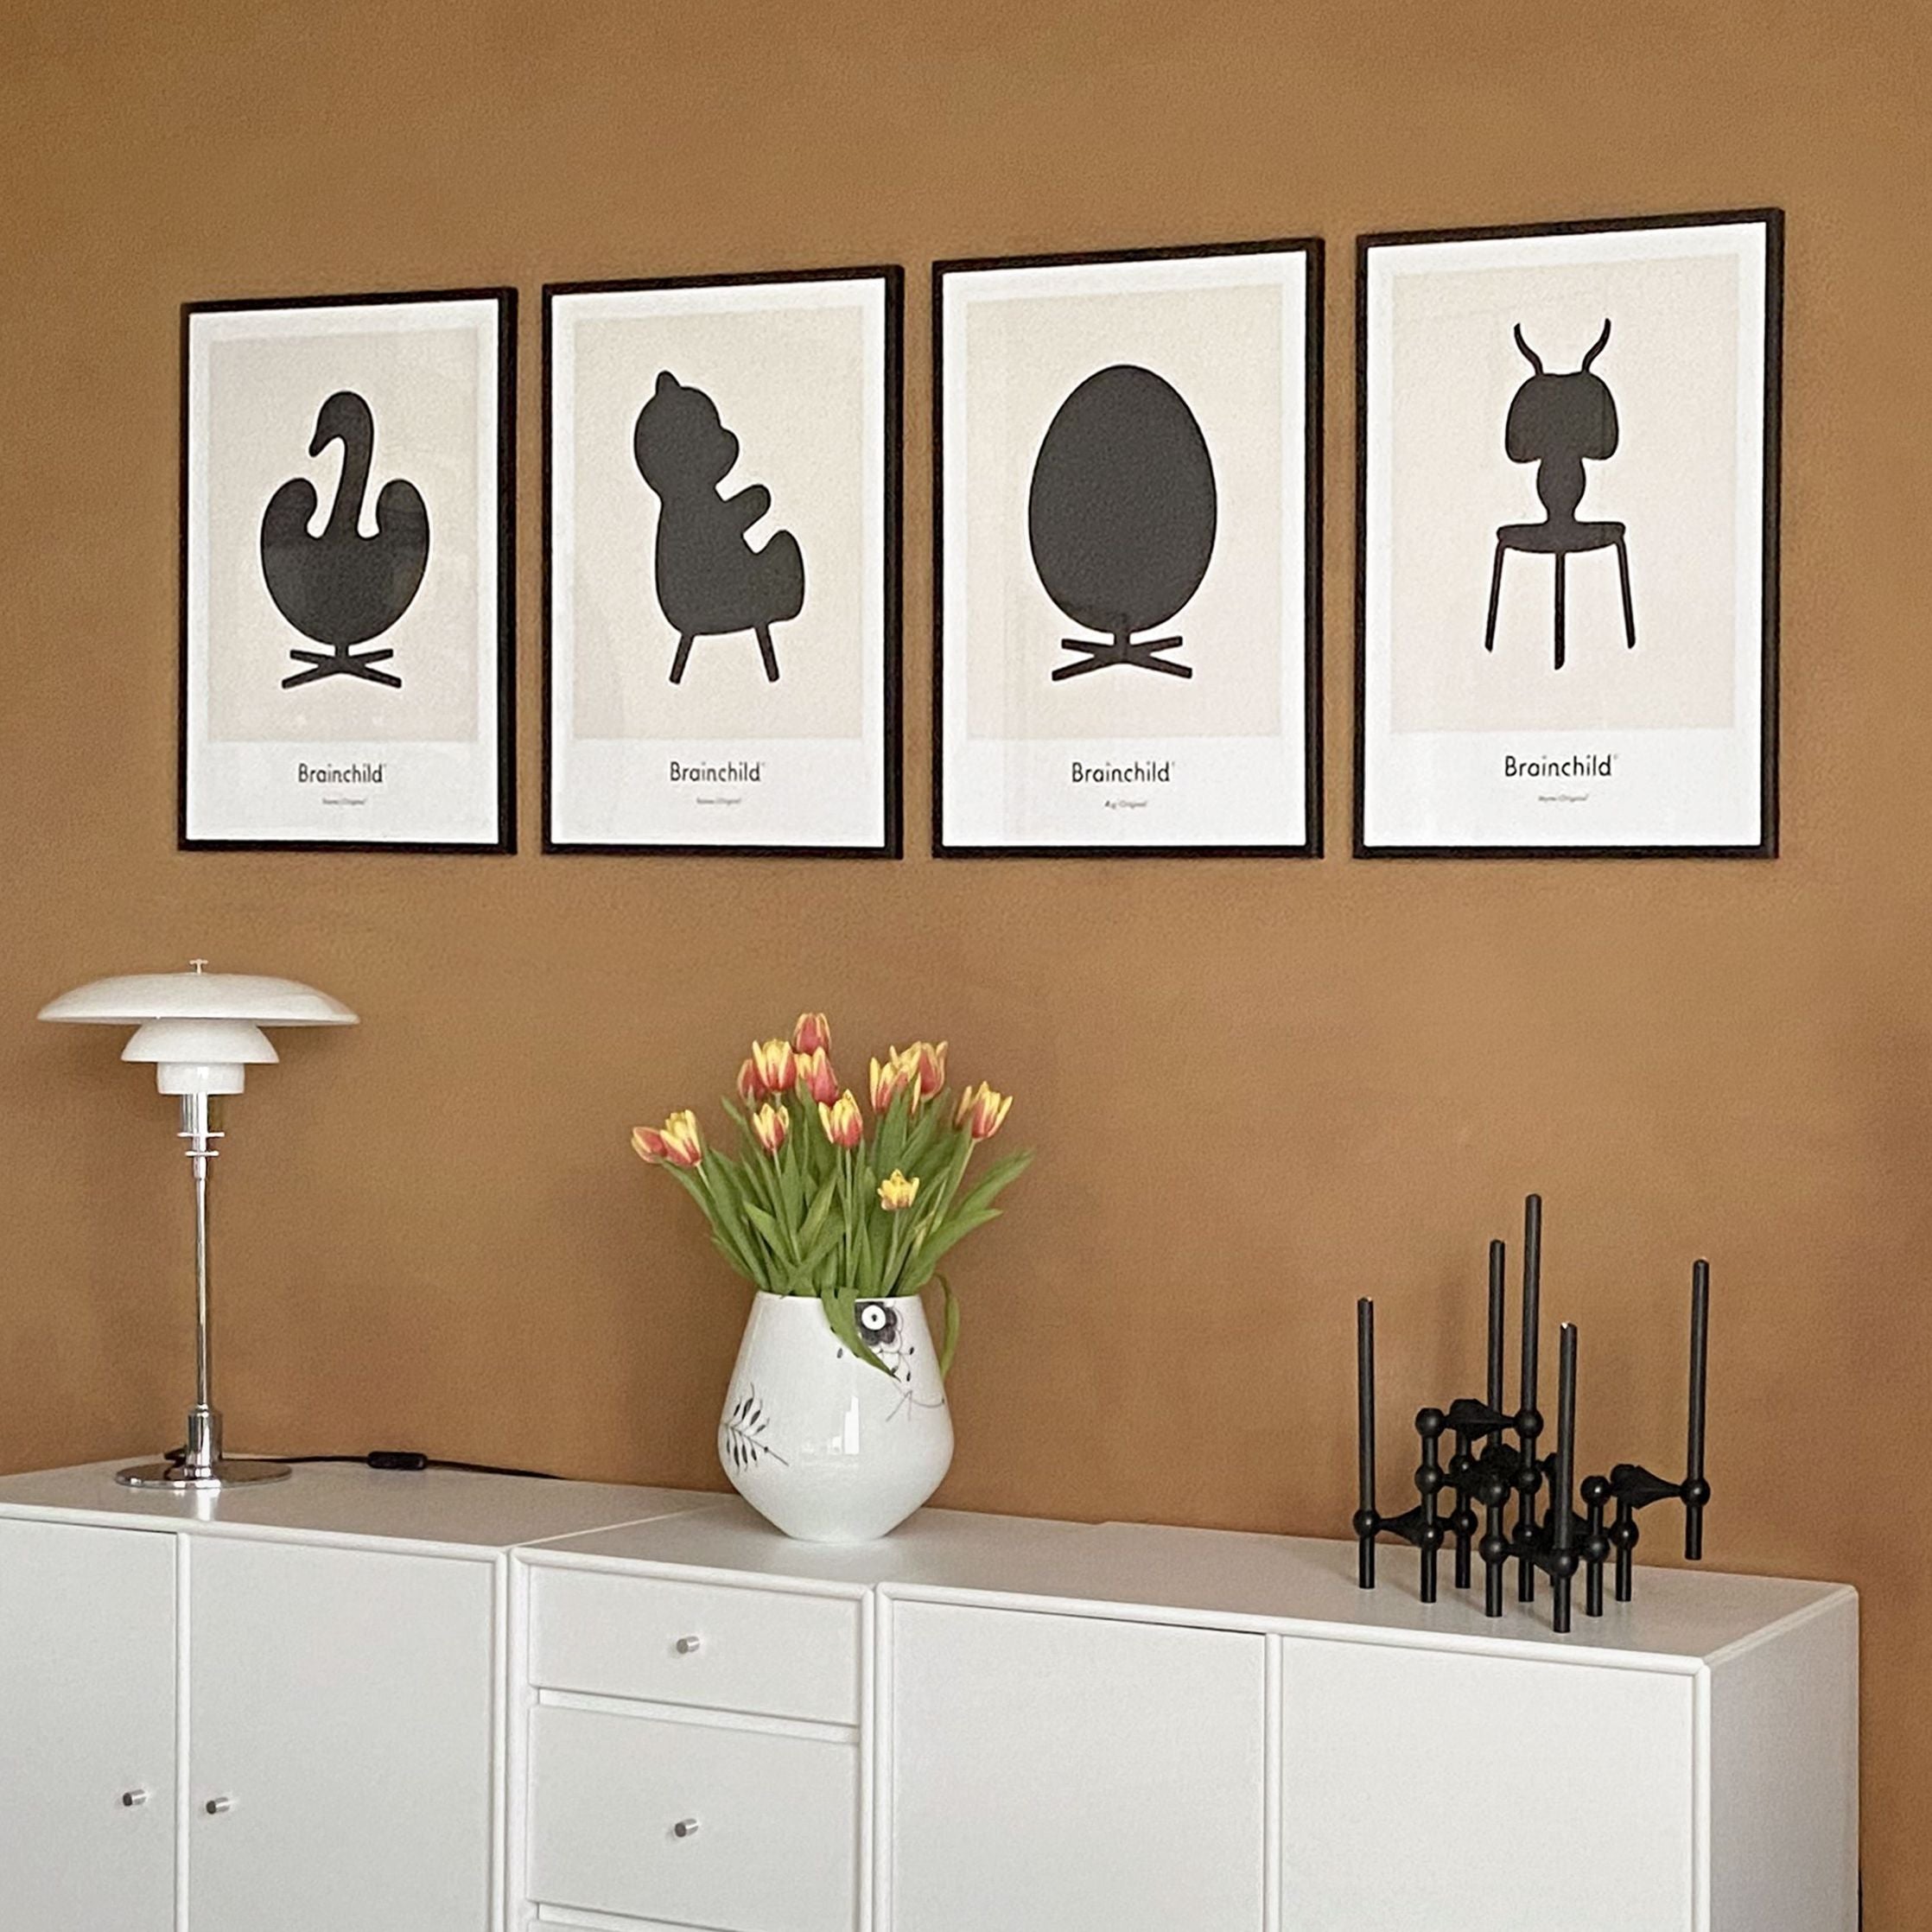 Brainchild Swan Design Icon Poster, Brass Frame A5, Grey